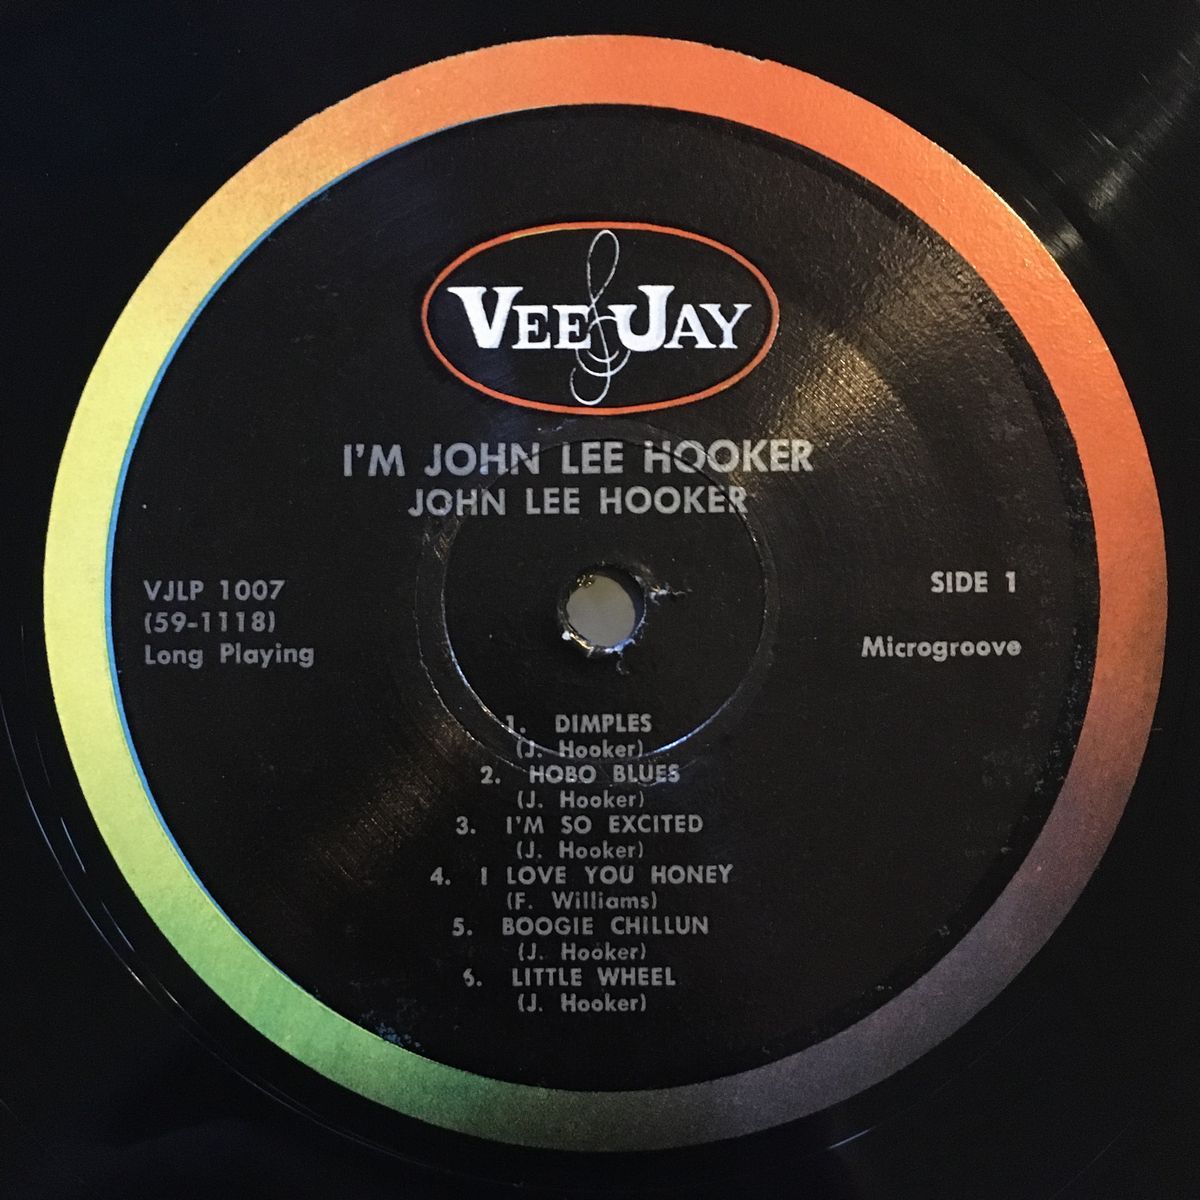 コンディション良好【貴重盤】JOHN LEE HOOKER  7インチレコード